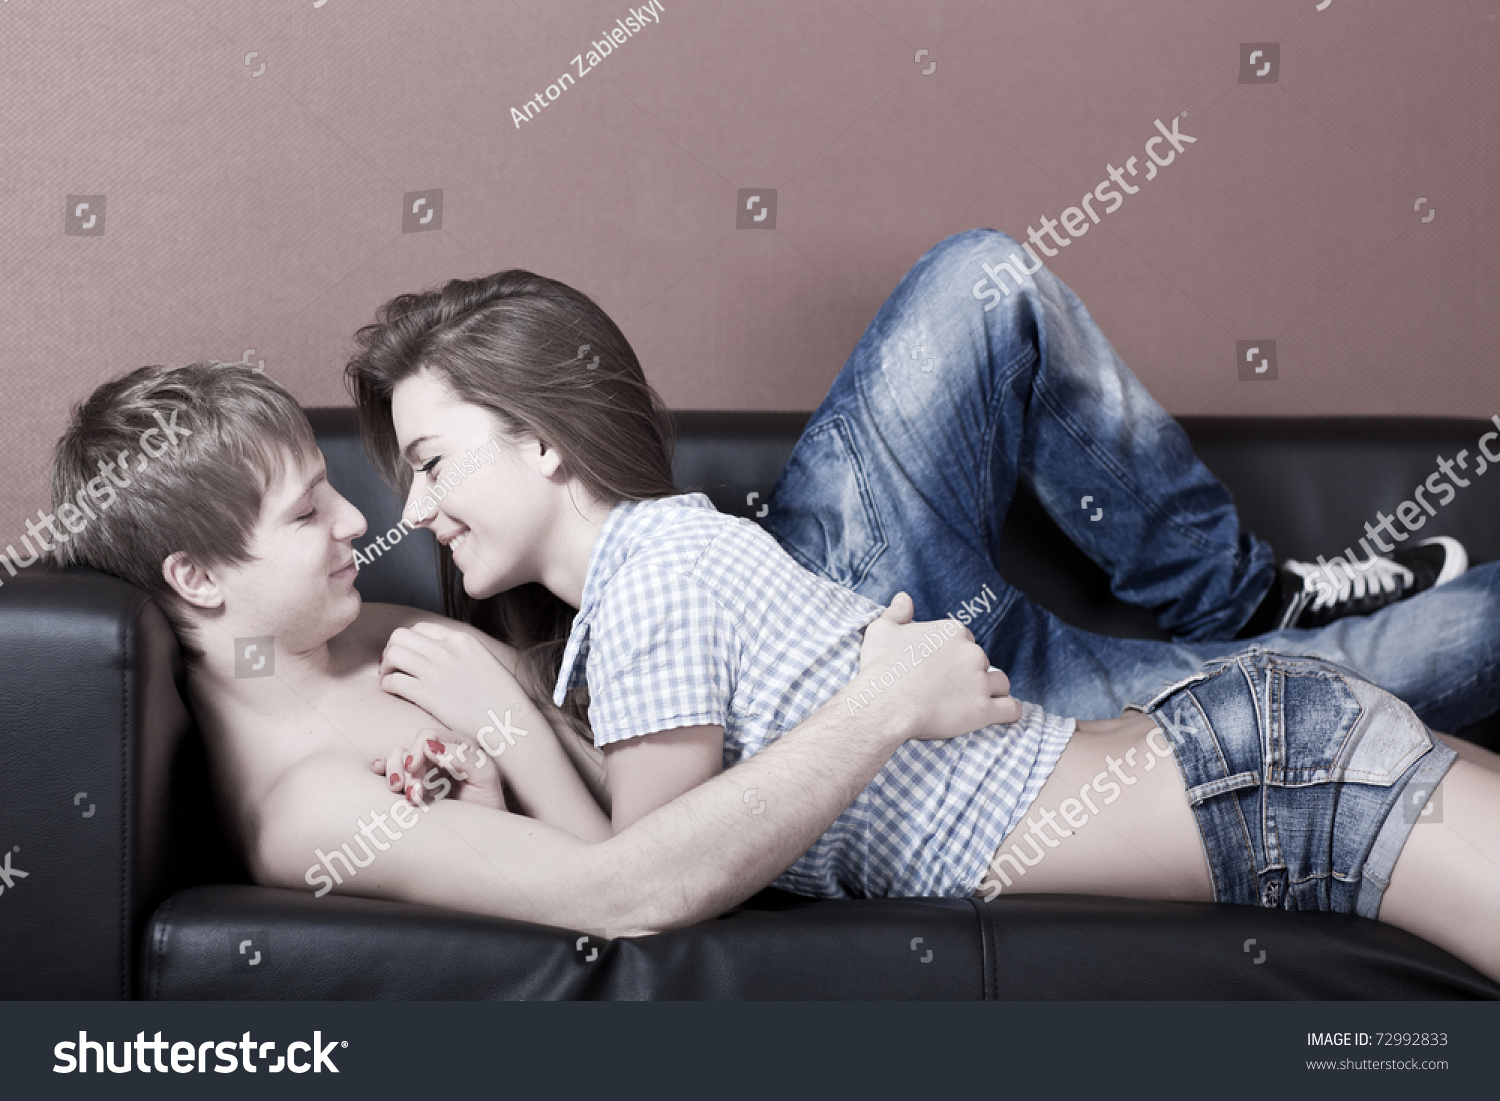 Молодая девка с темными волосами ласкается с приятелем и его подружкой на кровати